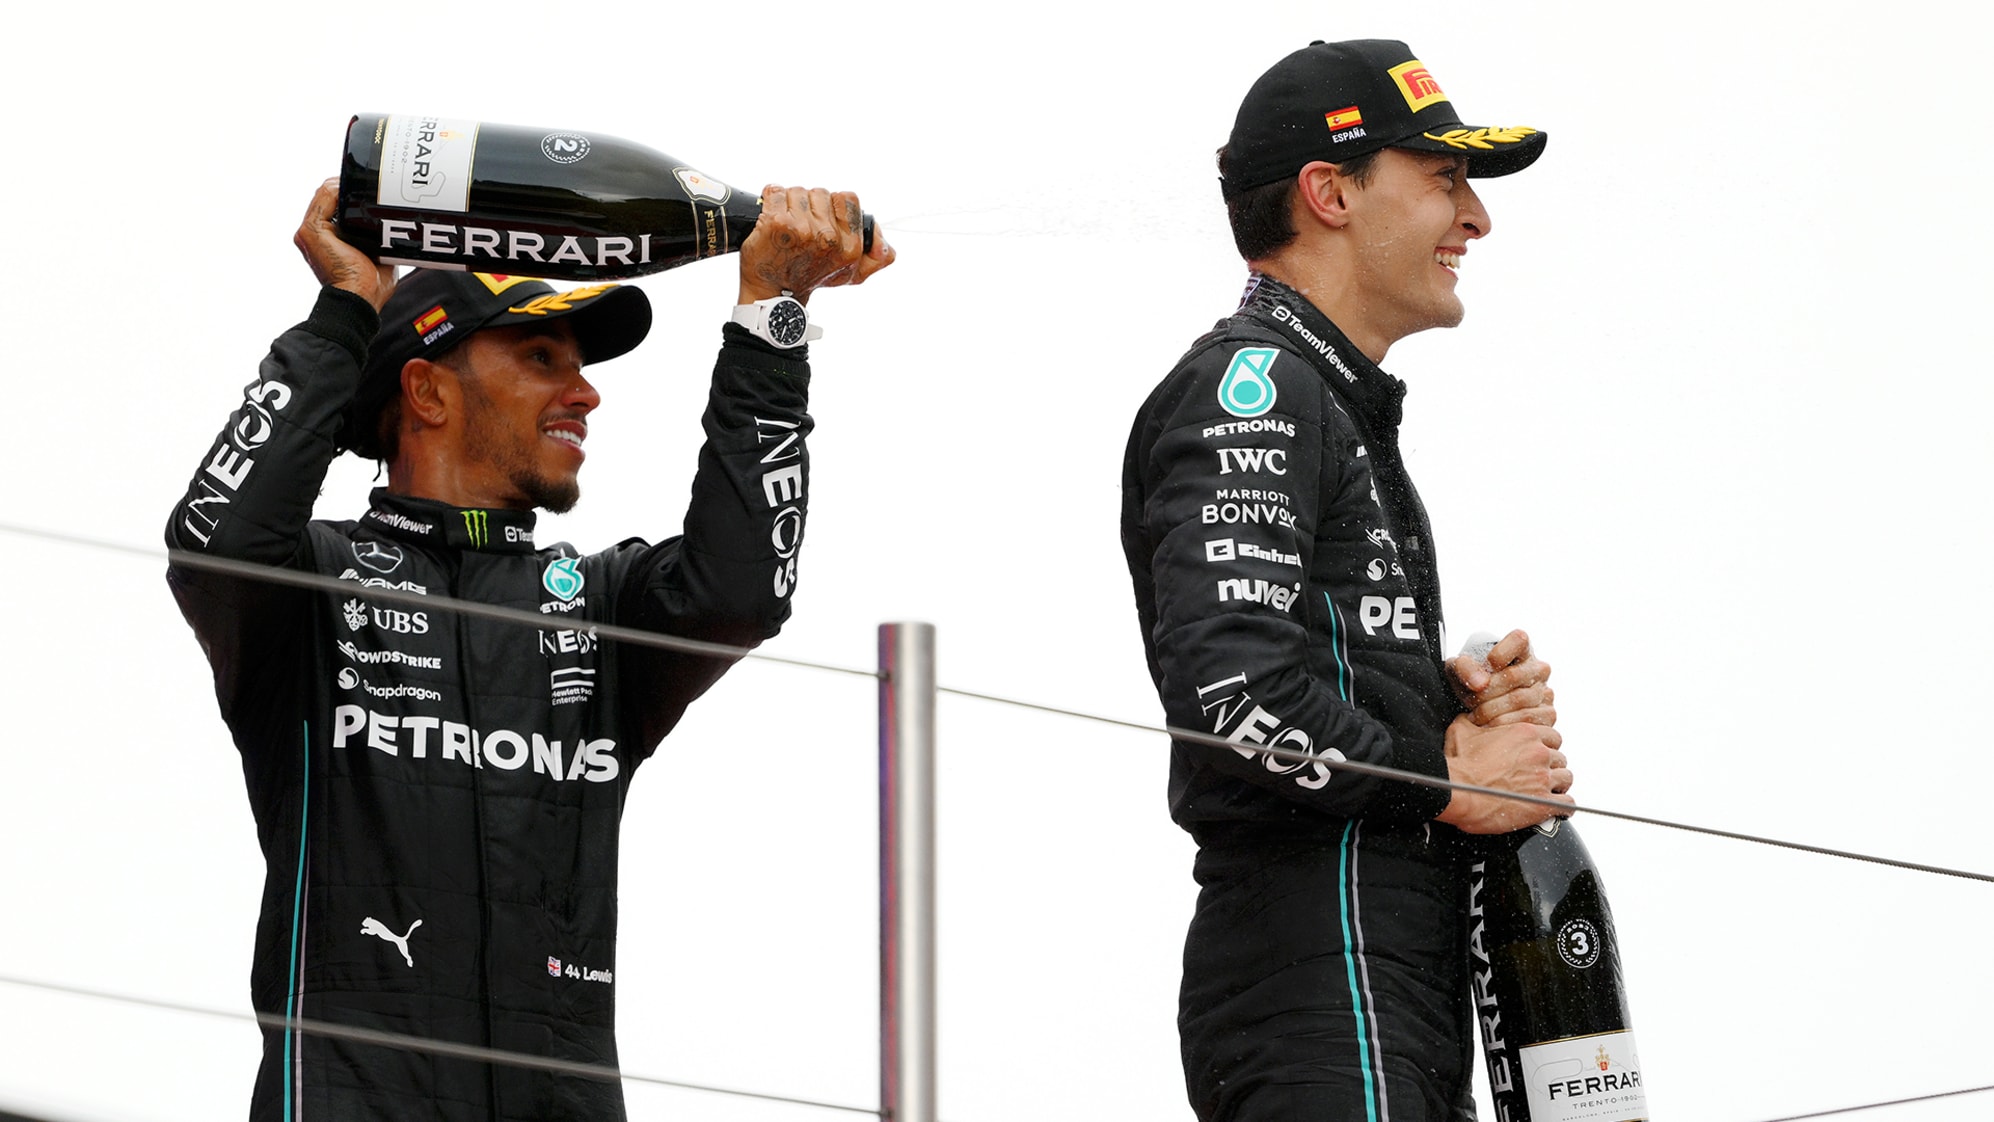 A esq. Lewis Hamilton e George Russel comemorando o pódio. Foto: Site F1.